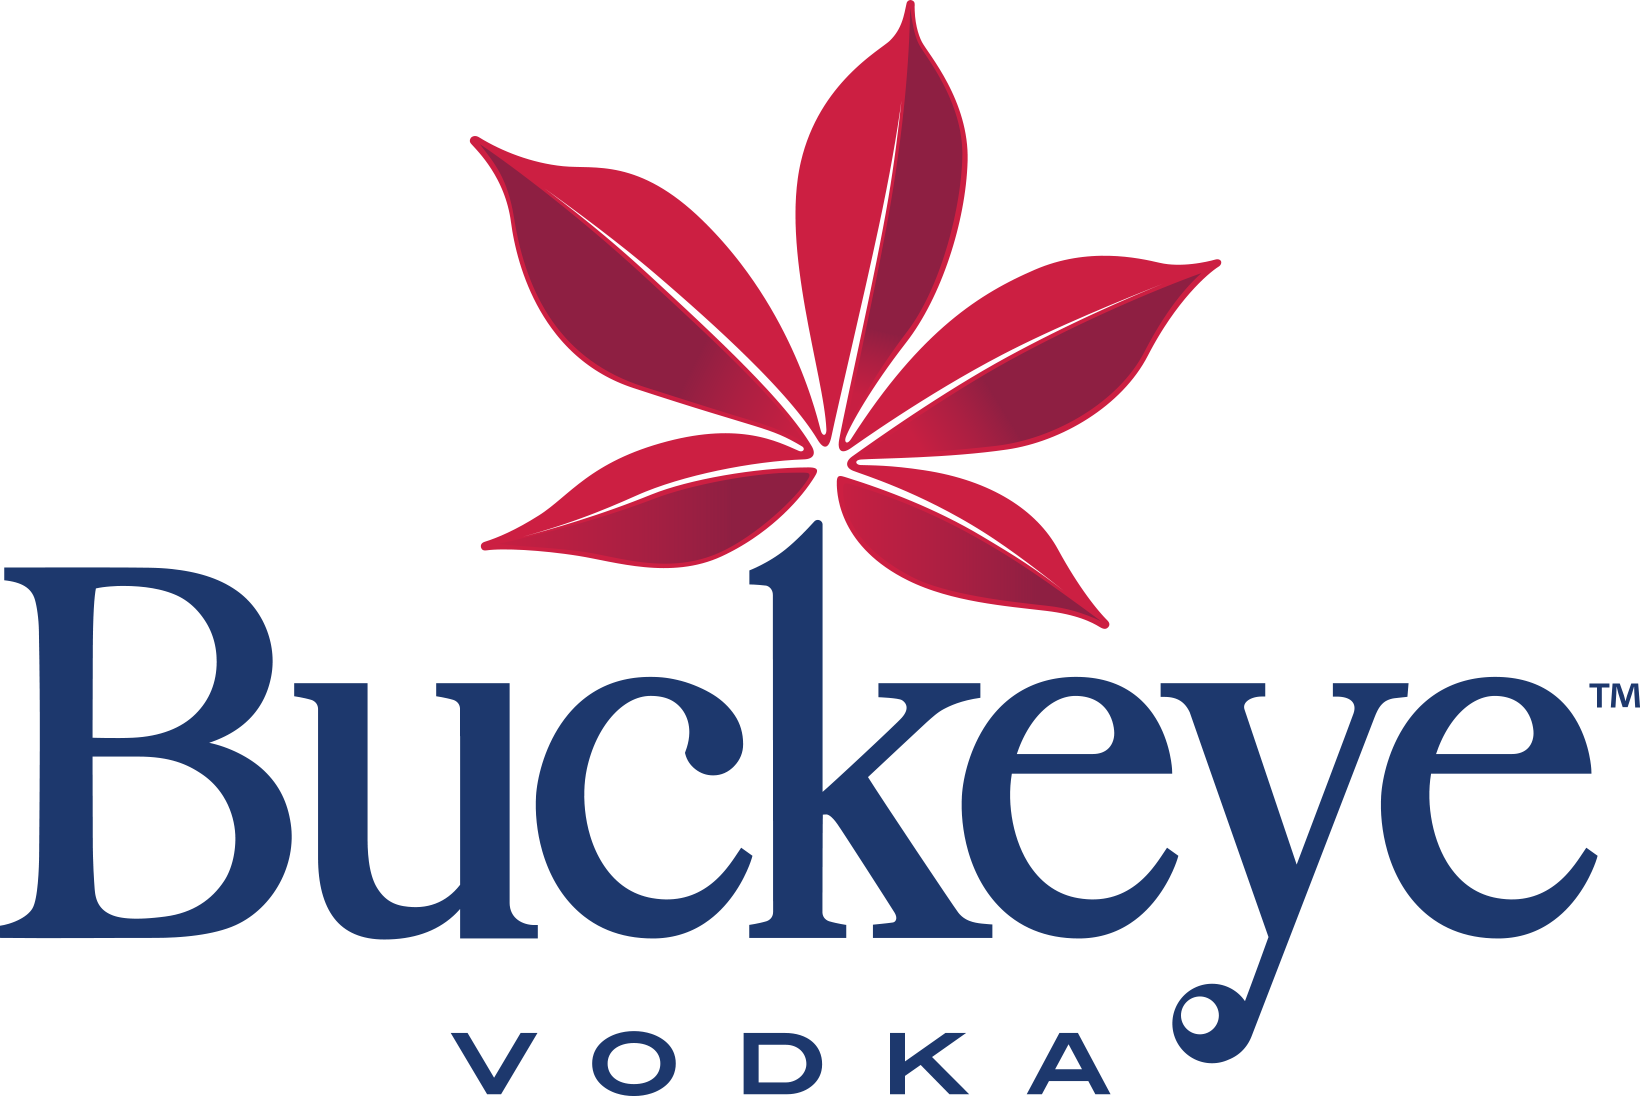 Buckeye Vodka | Dayton